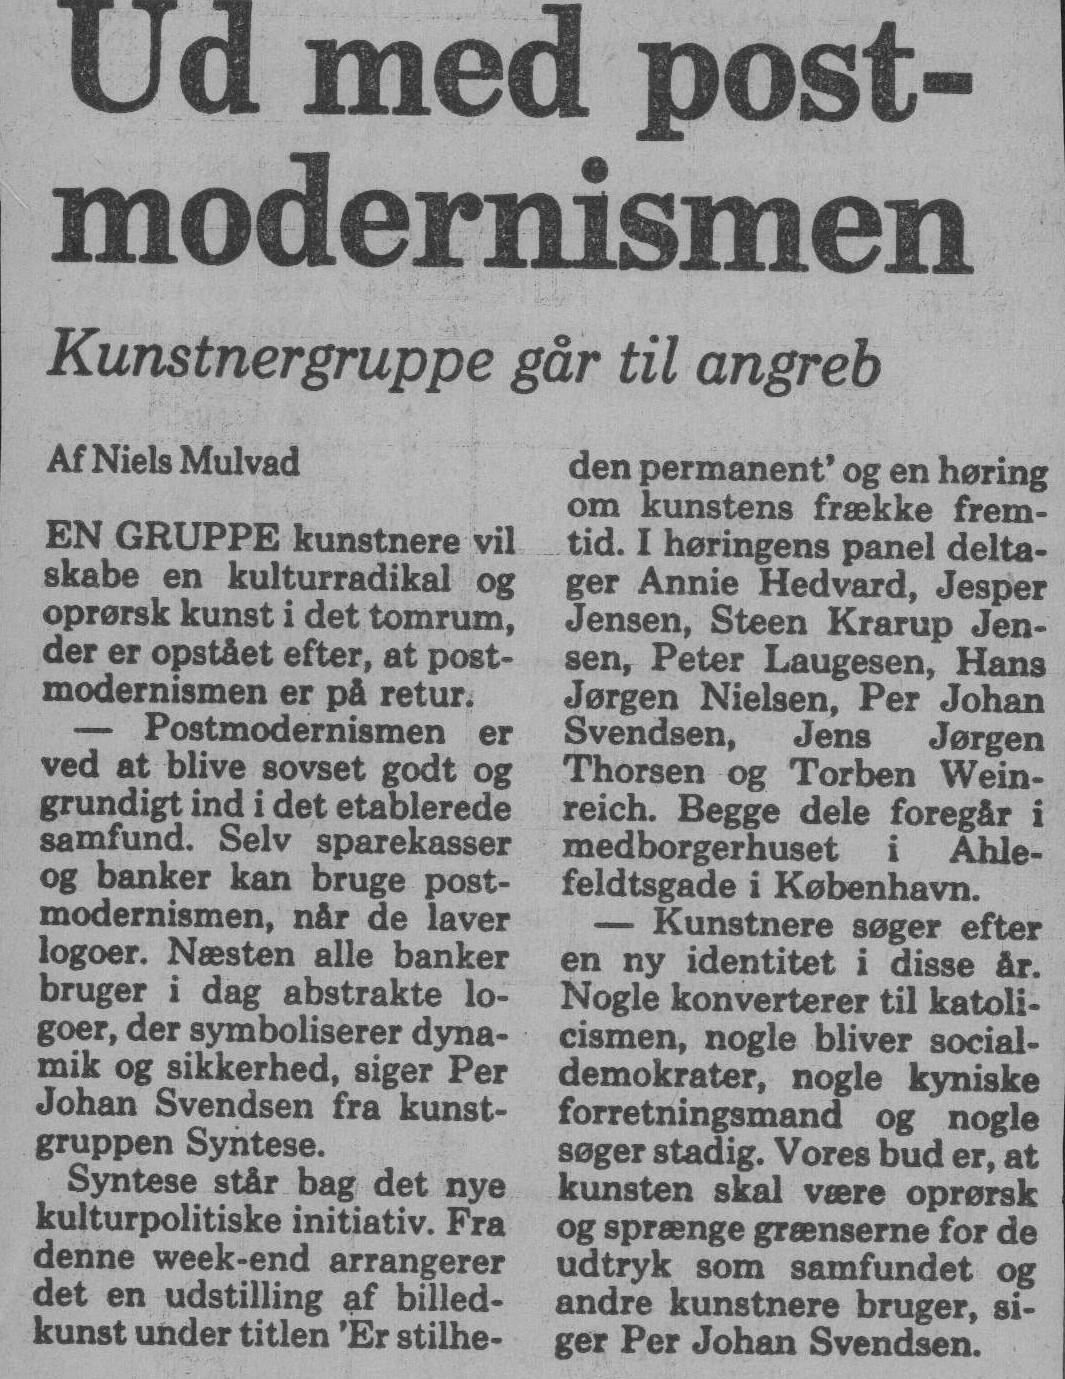 Ud med postmodernismen. Omtale (Er stilheden permanent. Ahlefeldtsgade, København 1986). Niels Mulvad. Politiken. Ultimo april 1986.